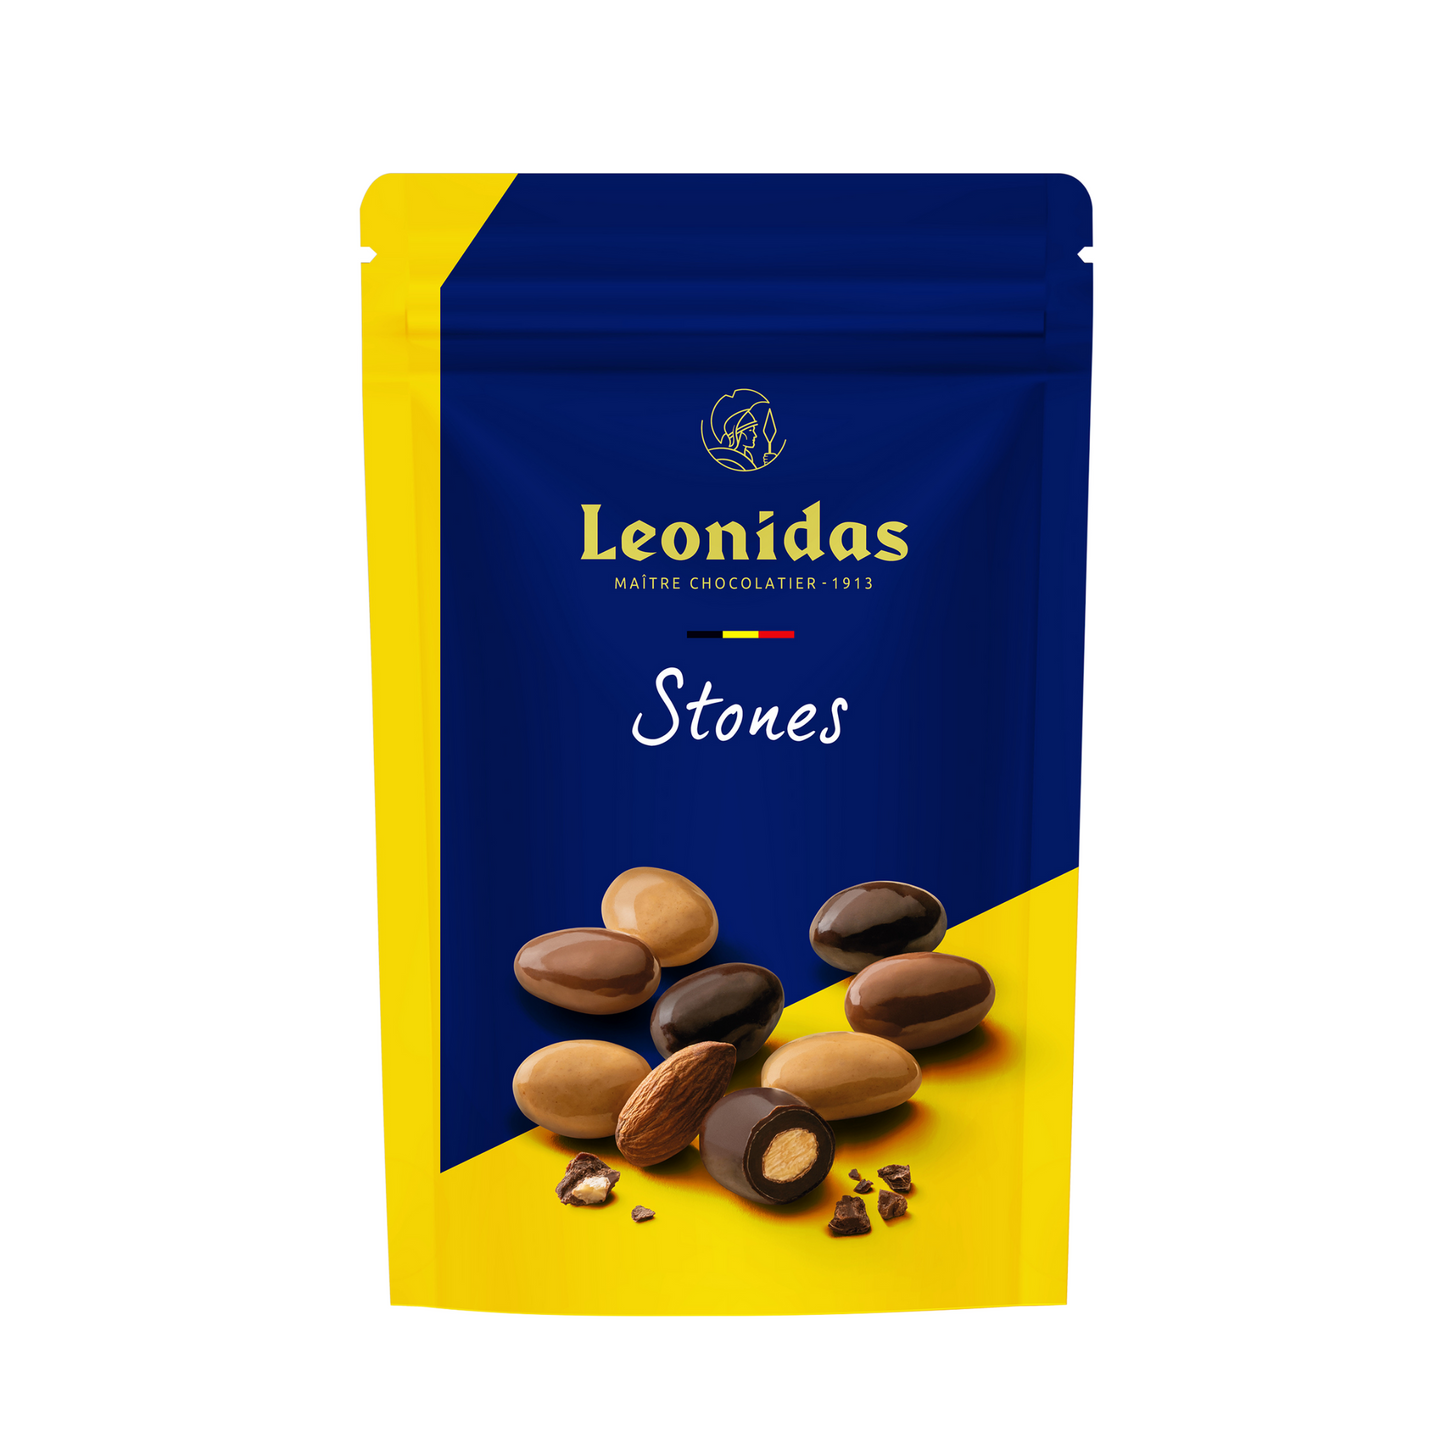 Leonidas Heritage Chocolate Hamper